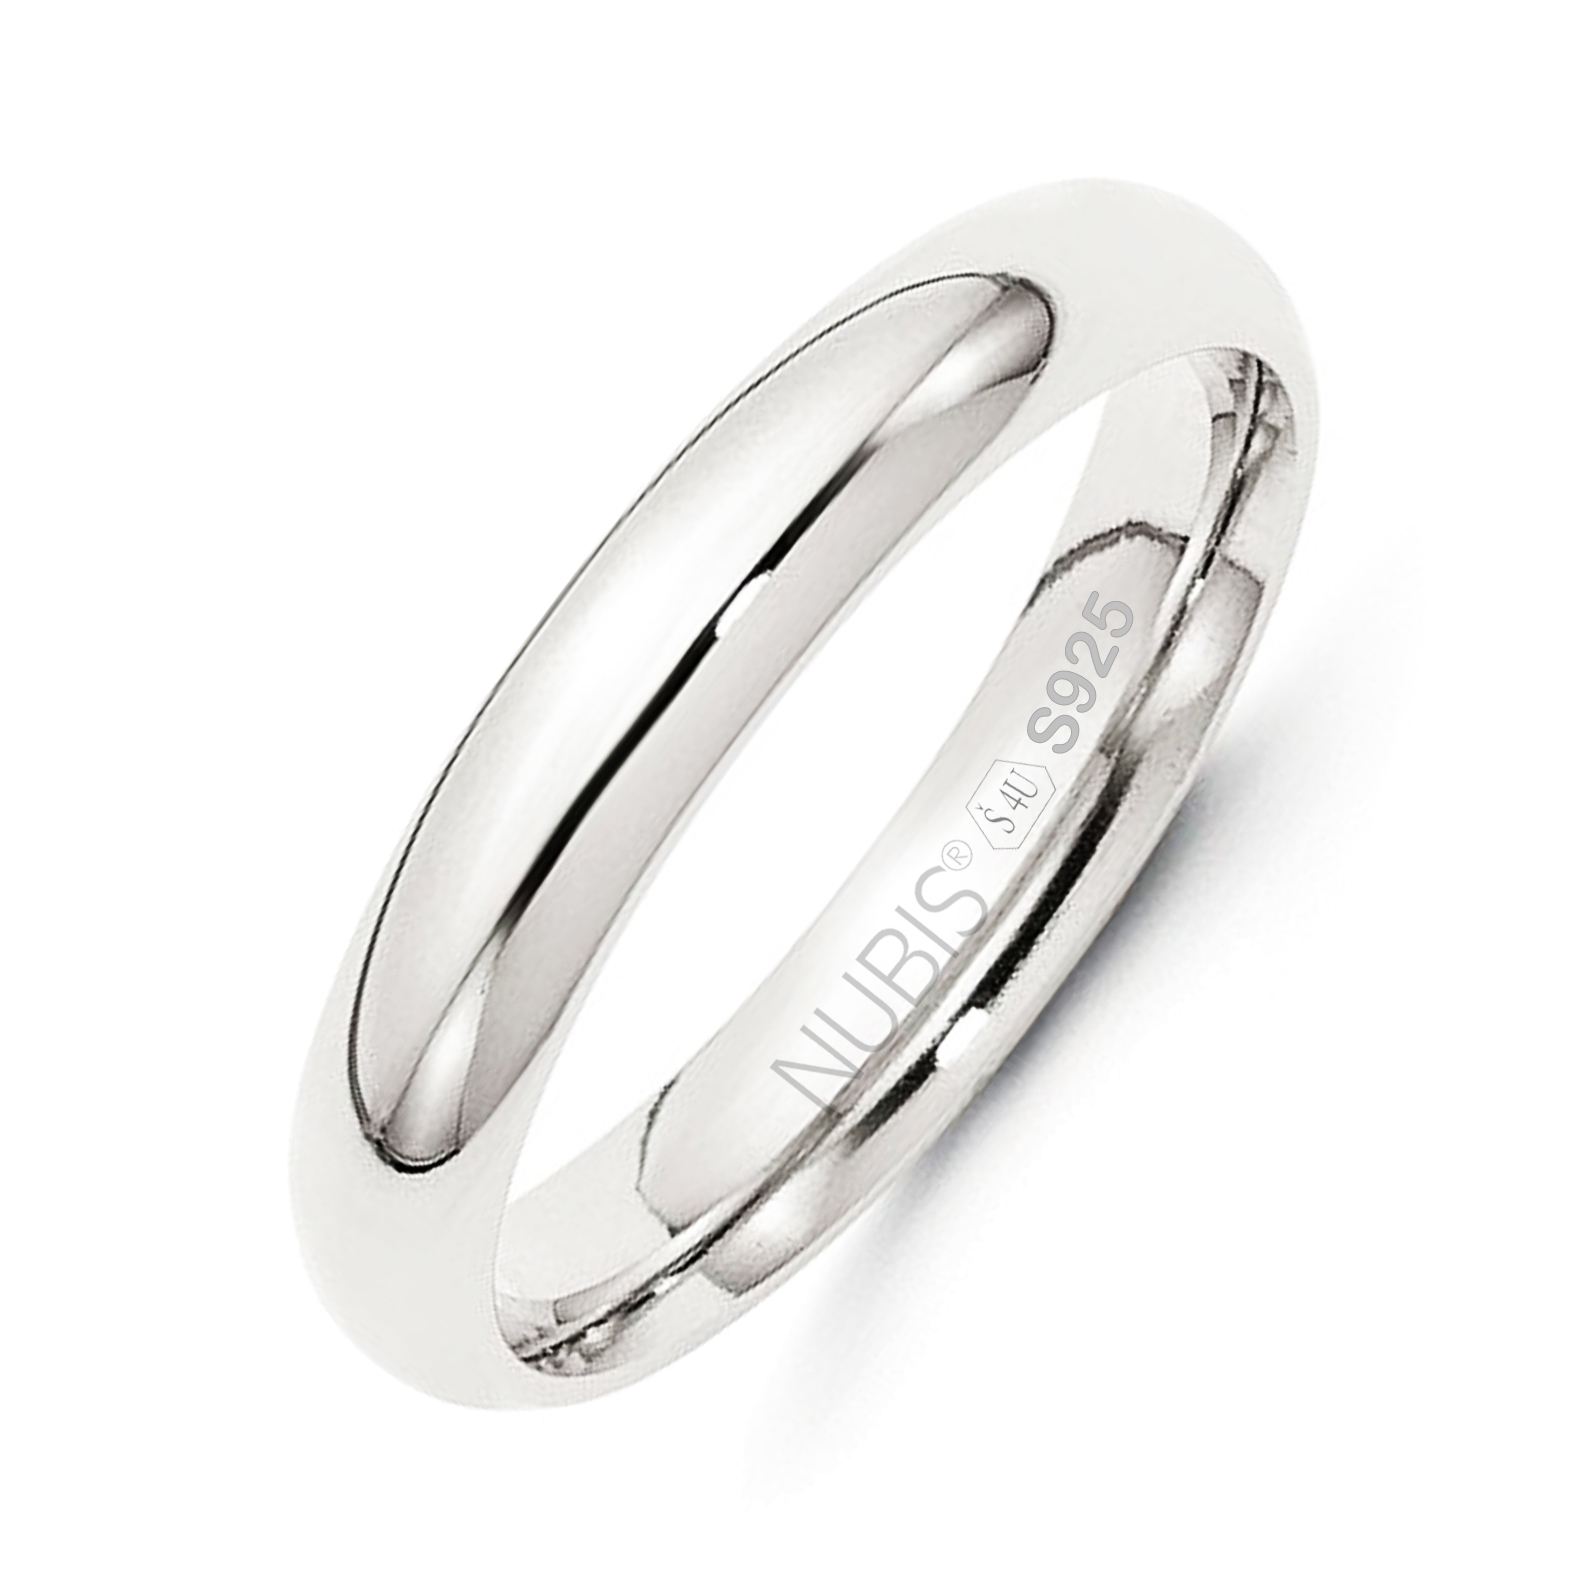 NUBIS® NB101-4 Stříbrný snubní prsten šíře 4 mm - velikost 49 - NB101-4-49